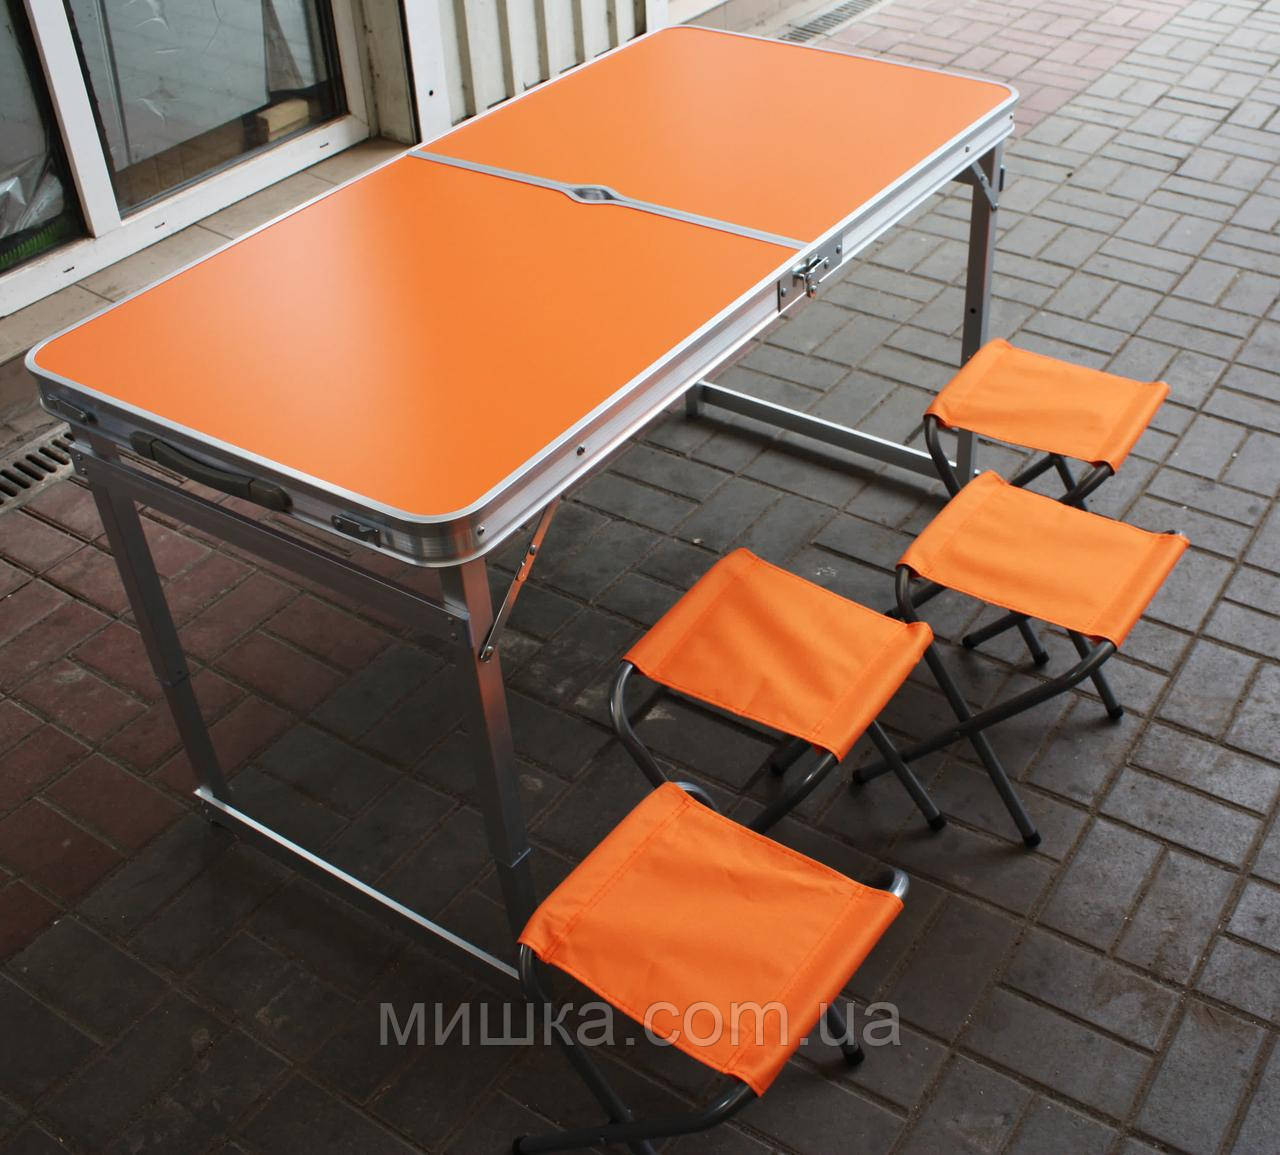 ПОСИЛЕНИЙ зручний розкладний стіл для пікніка та 4 стільця, помаранчевий